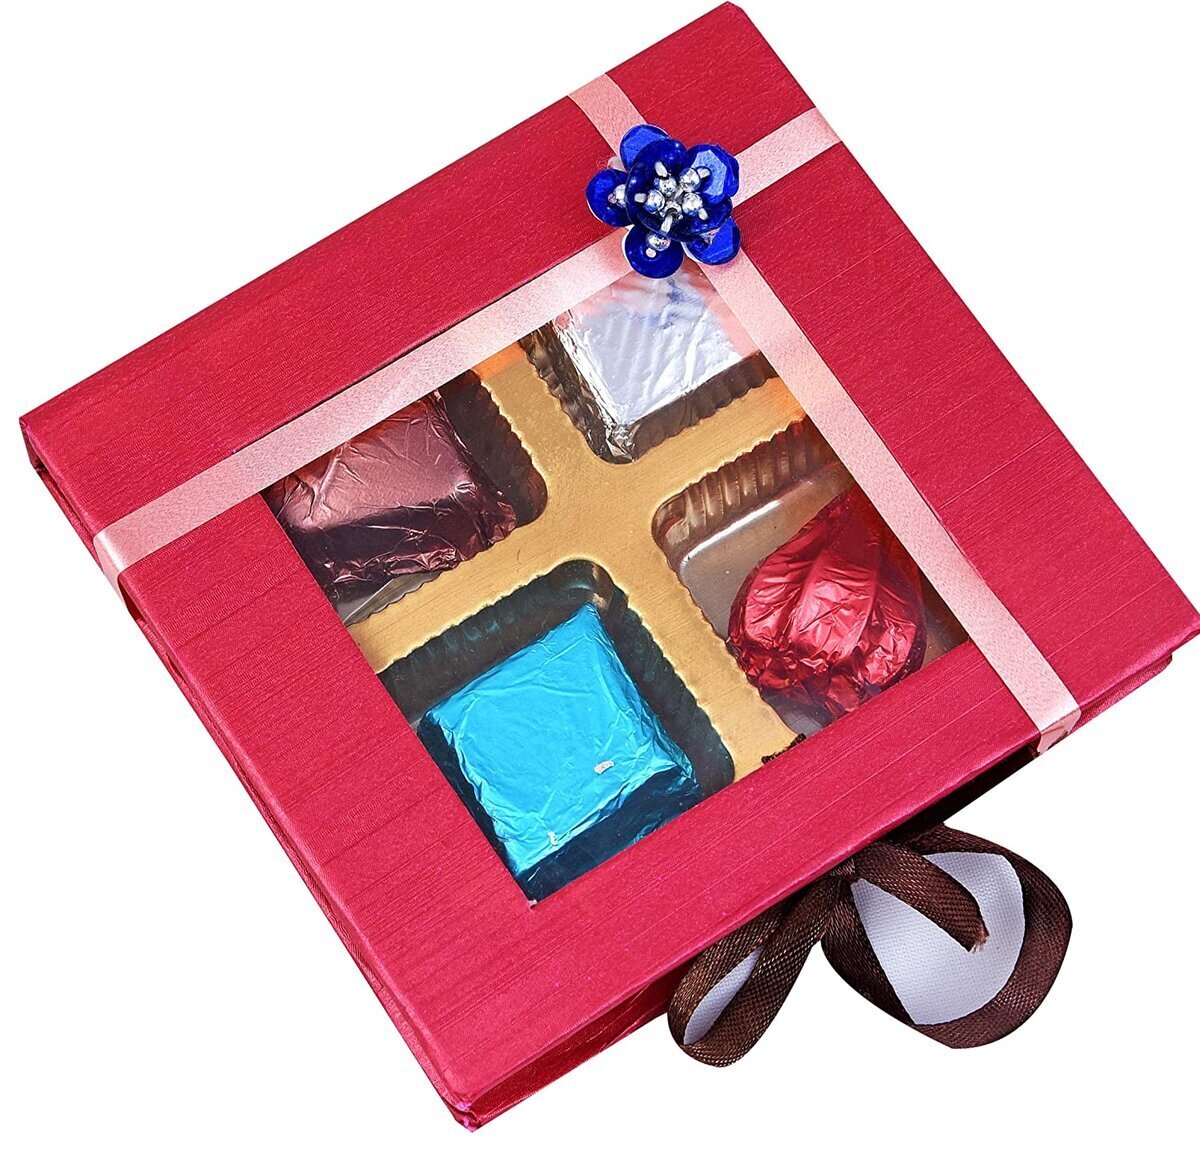 Chocolate Gift Box - 8 Chocolates + 1 Diya - Brown & White